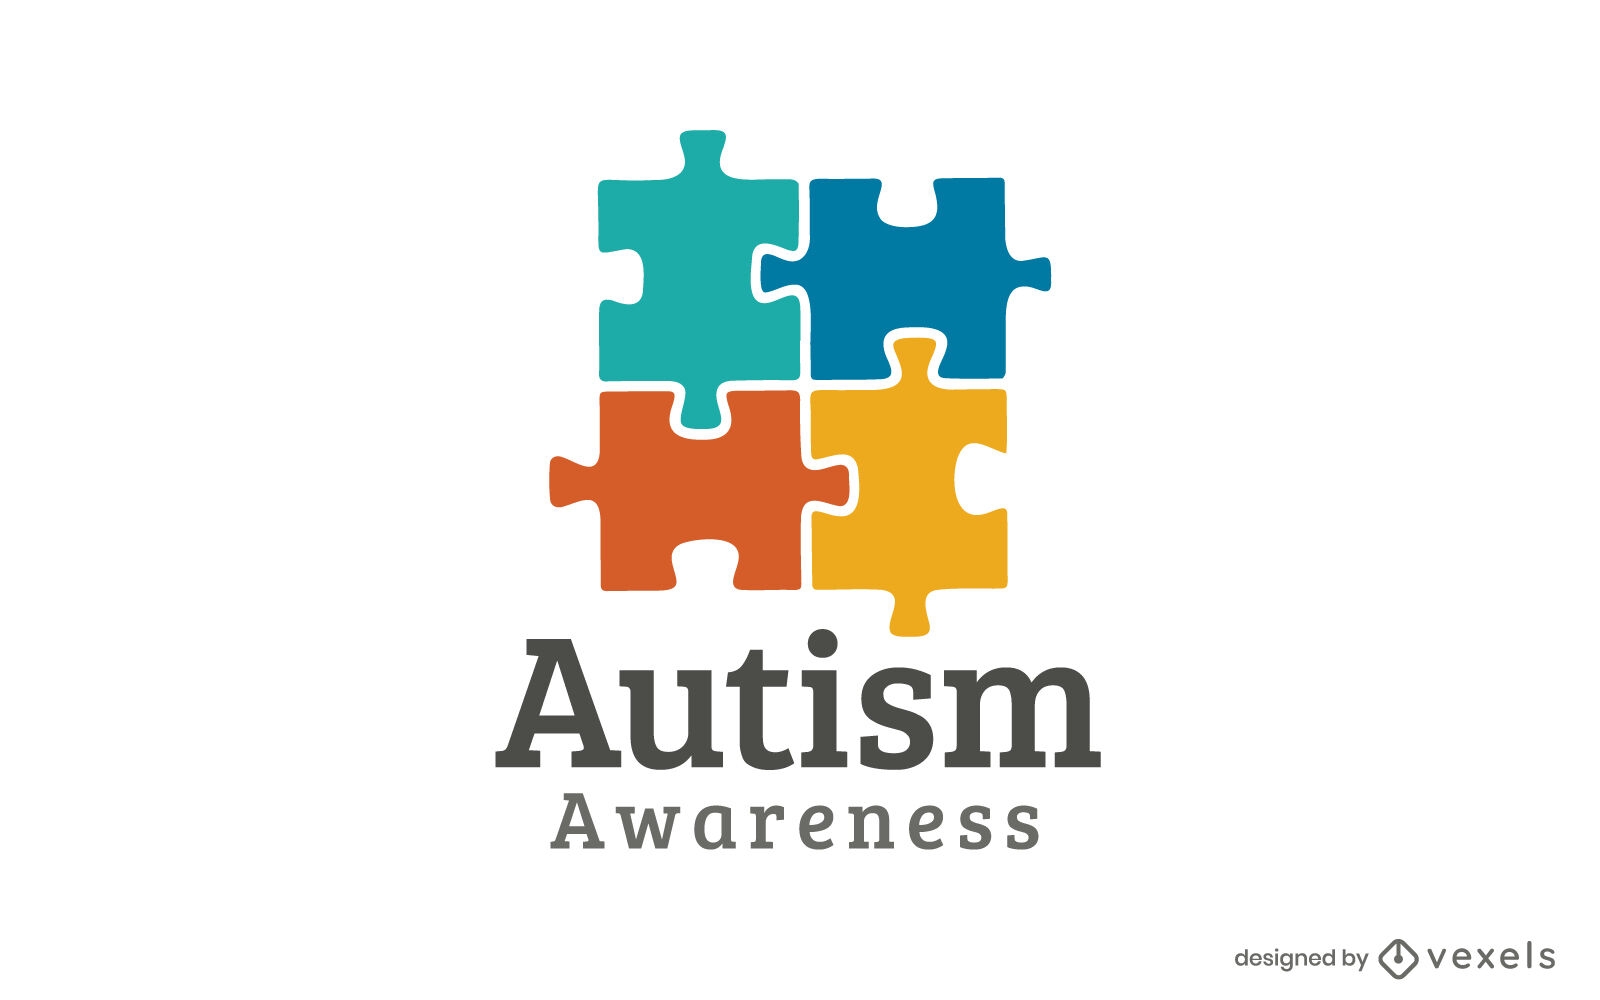 Ilustración de conciencia de autismo